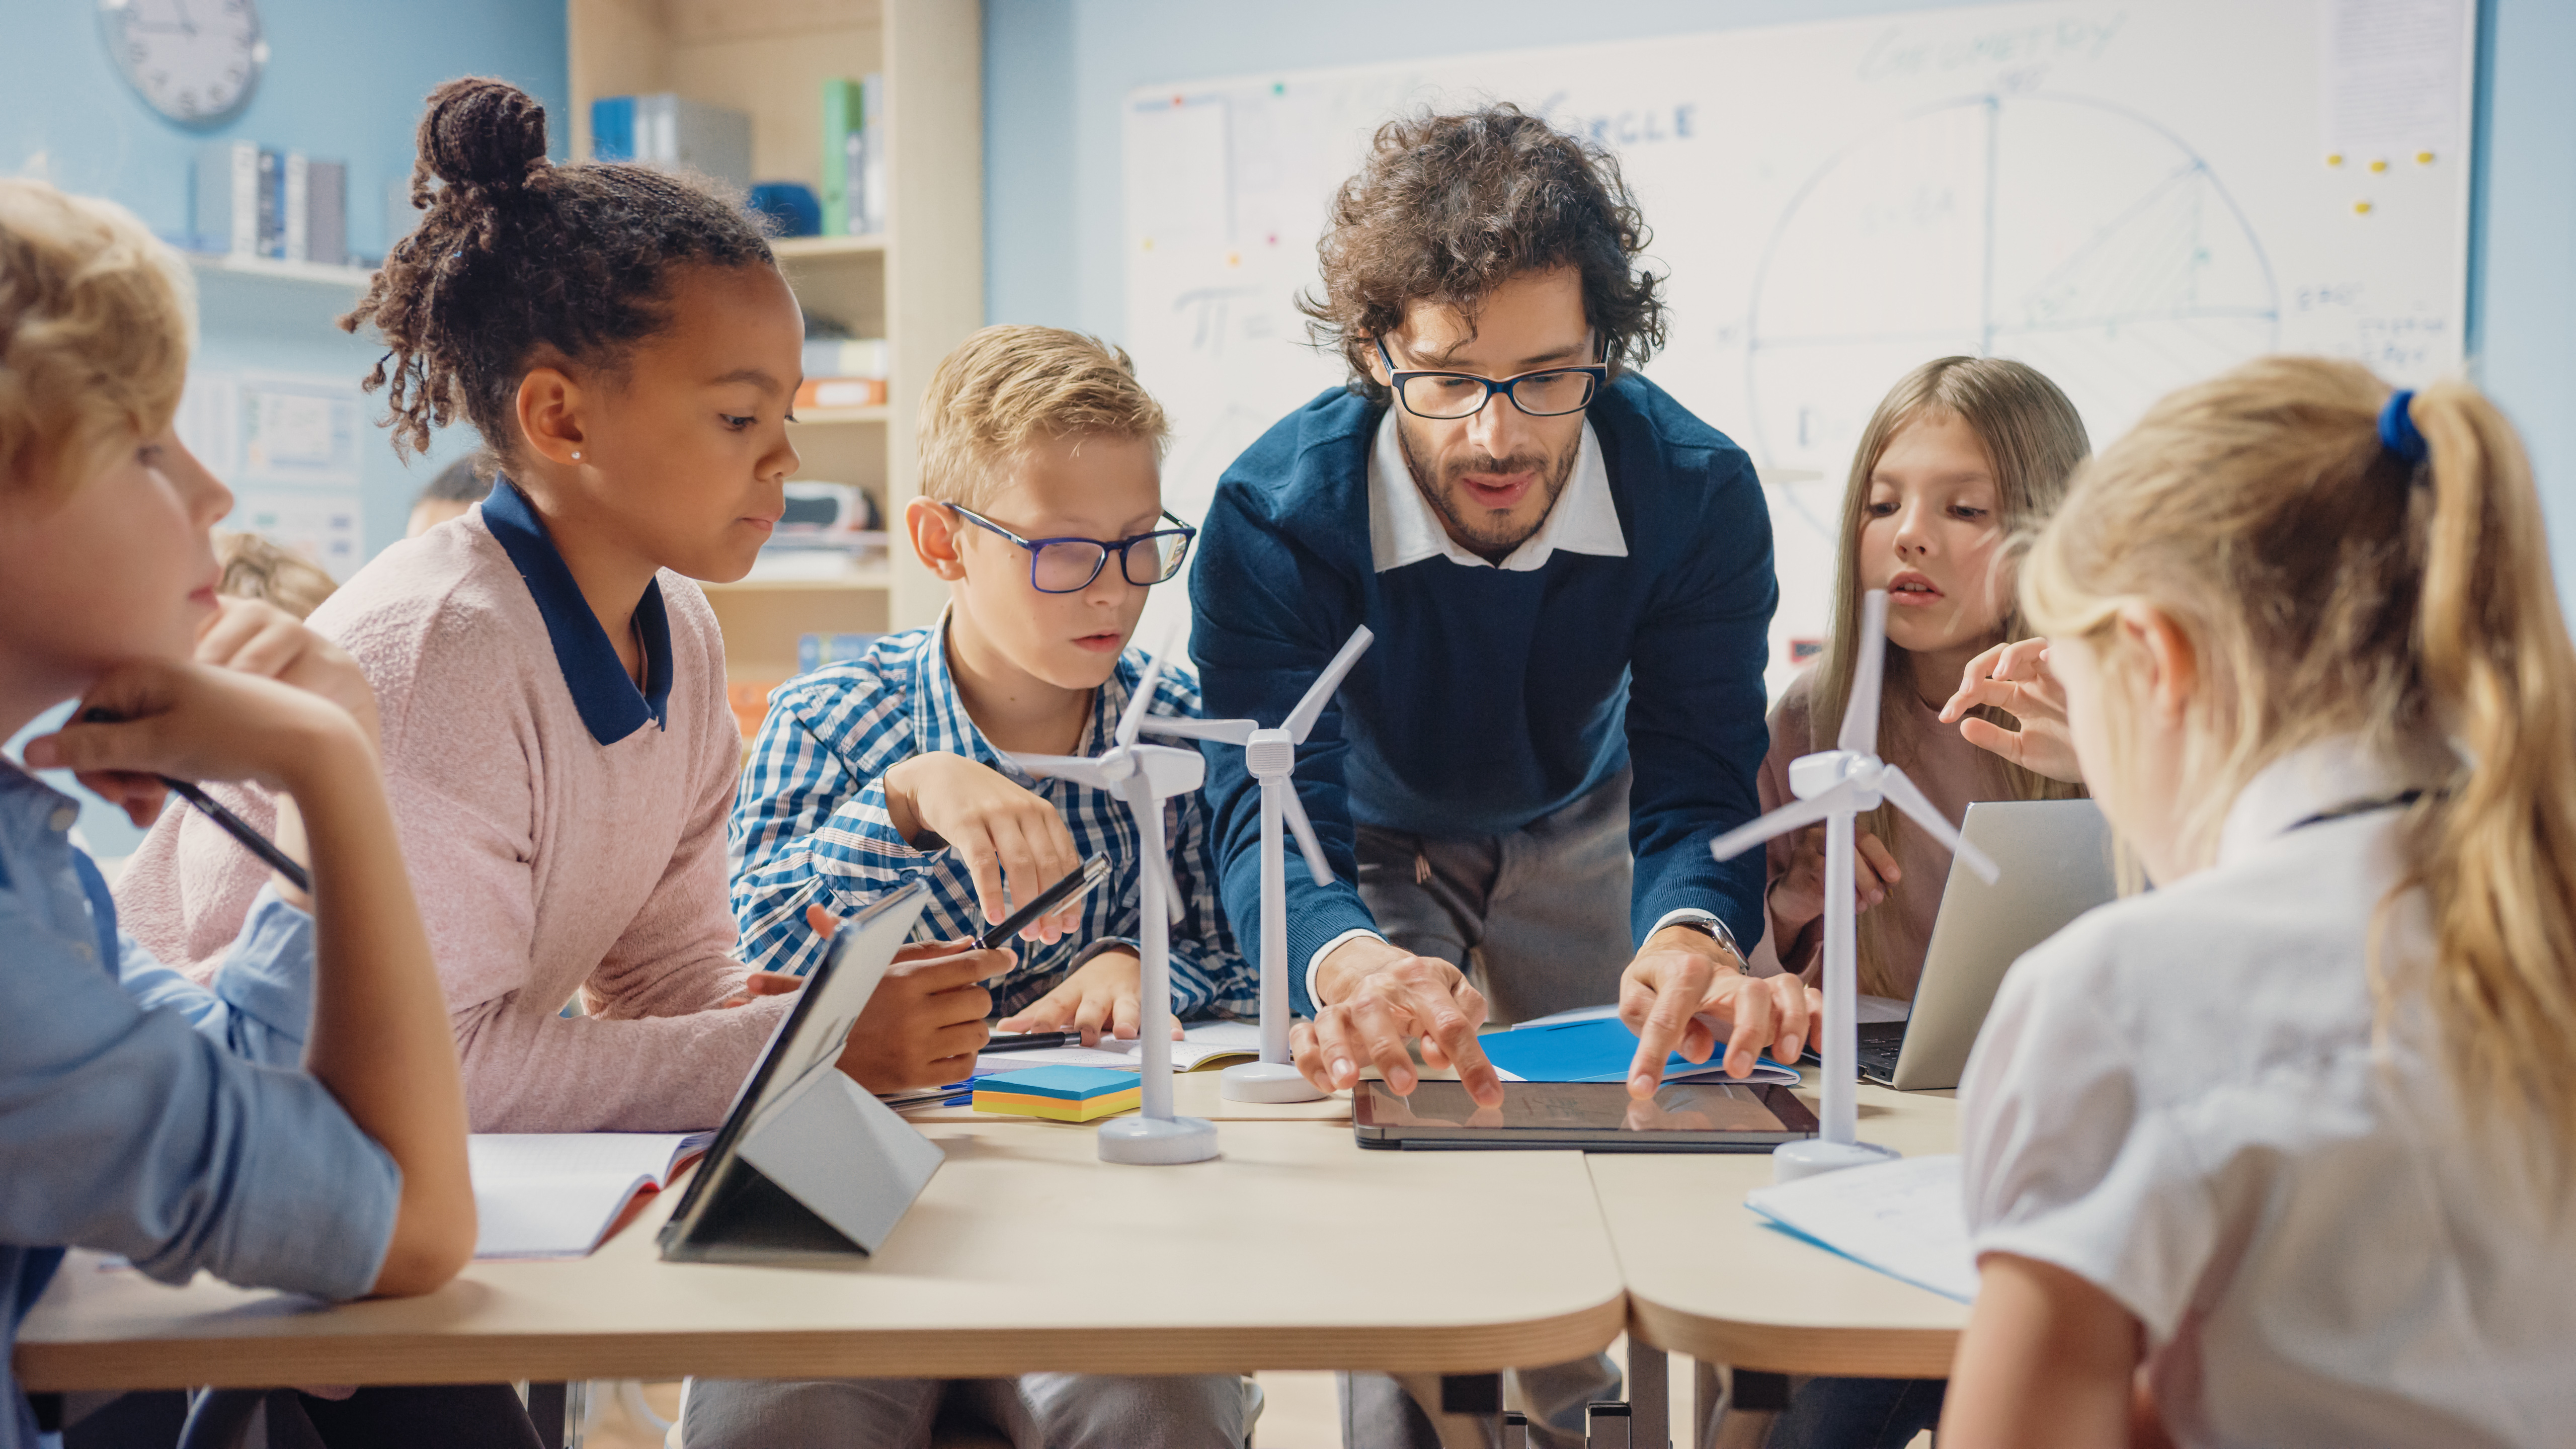 Los docentes pueden apoyarse de las nuevas tecnologías en sus clases como un apoyo y tener mejor dinamismo. (Foto Prensa Libre: Shutterstock)